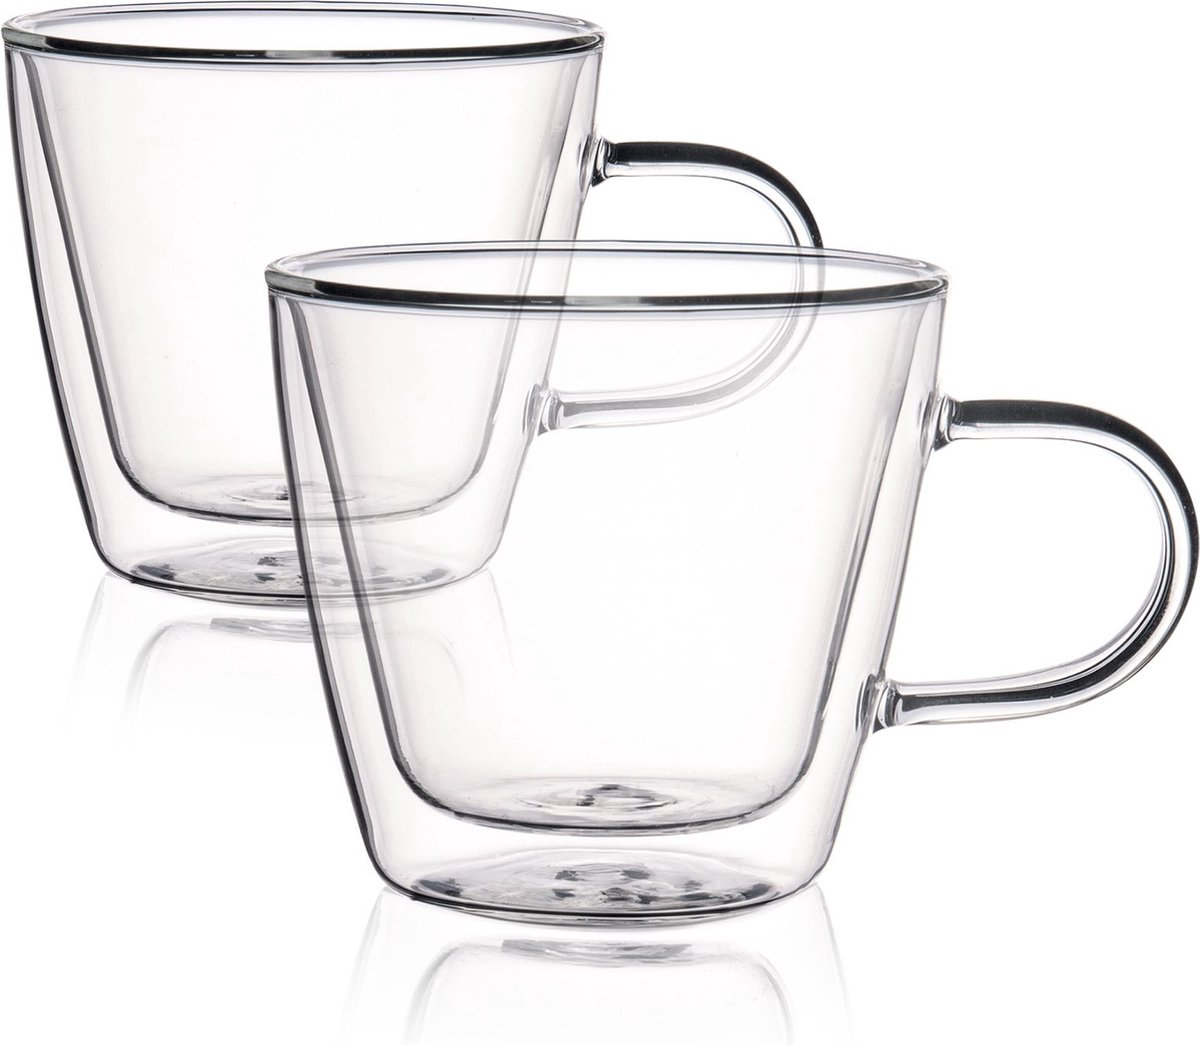 HOMLA Cembra dubbelwandig glas - set van 2 mokken - voor koffie thee latte macchiato cappuccino - vaatwasmachinebestendig hoogte 9 cm hoog 0,28 l inhoud